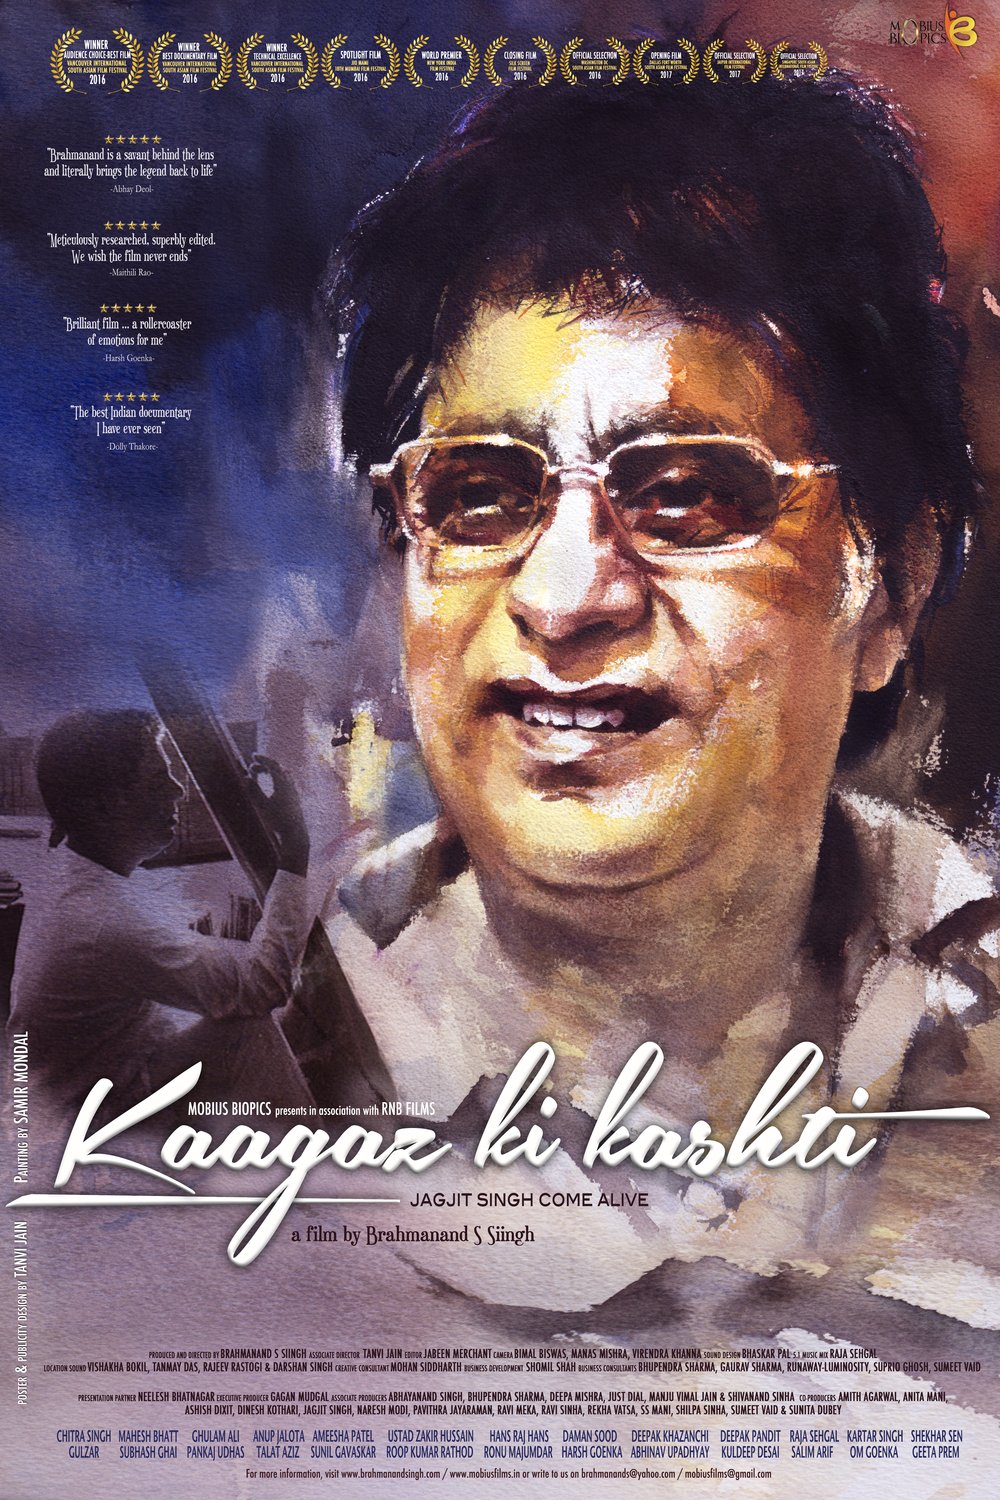 Hindi poster of the movie Kaagaz Ki Kashti